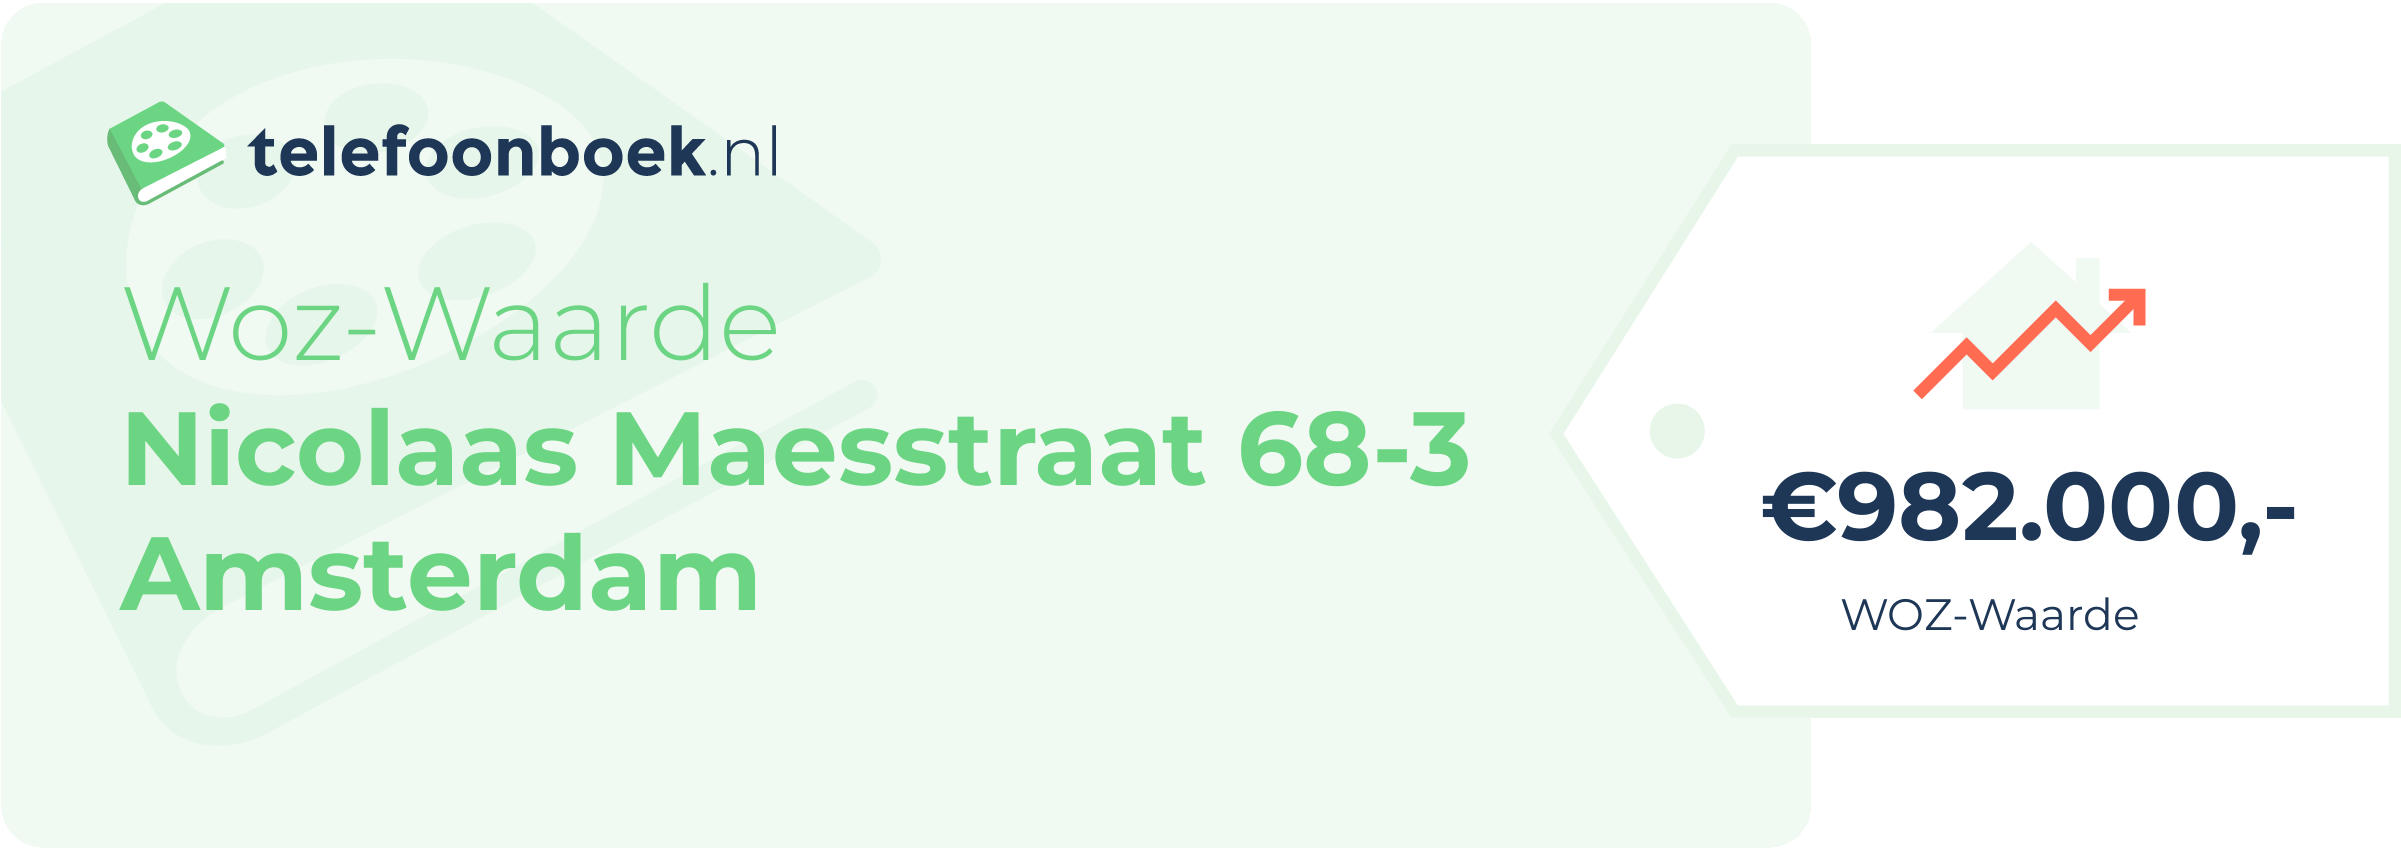 WOZ-waarde Nicolaas Maesstraat 68-3 Amsterdam